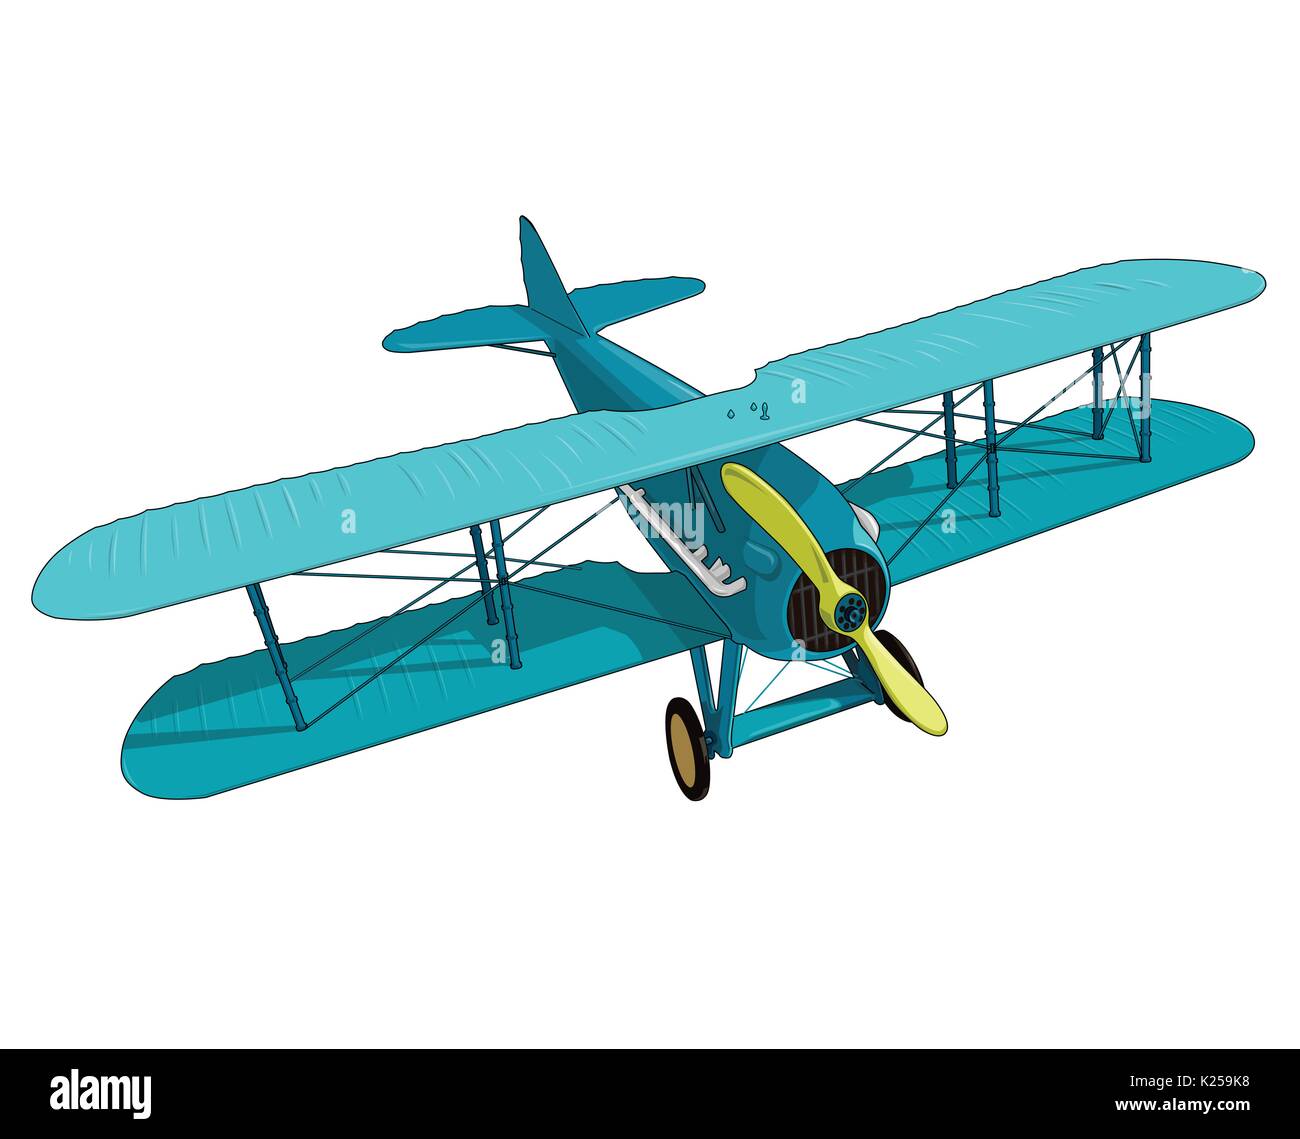 Vektor Doppeldecker aus dem Ersten Weltkrieg mit blauen Beschichtung. Modell Flugzeug Propeller mit zwei Flügeln. Alten retro Flugzeuge für den Posterdruck konzipiert. Stock Vektor